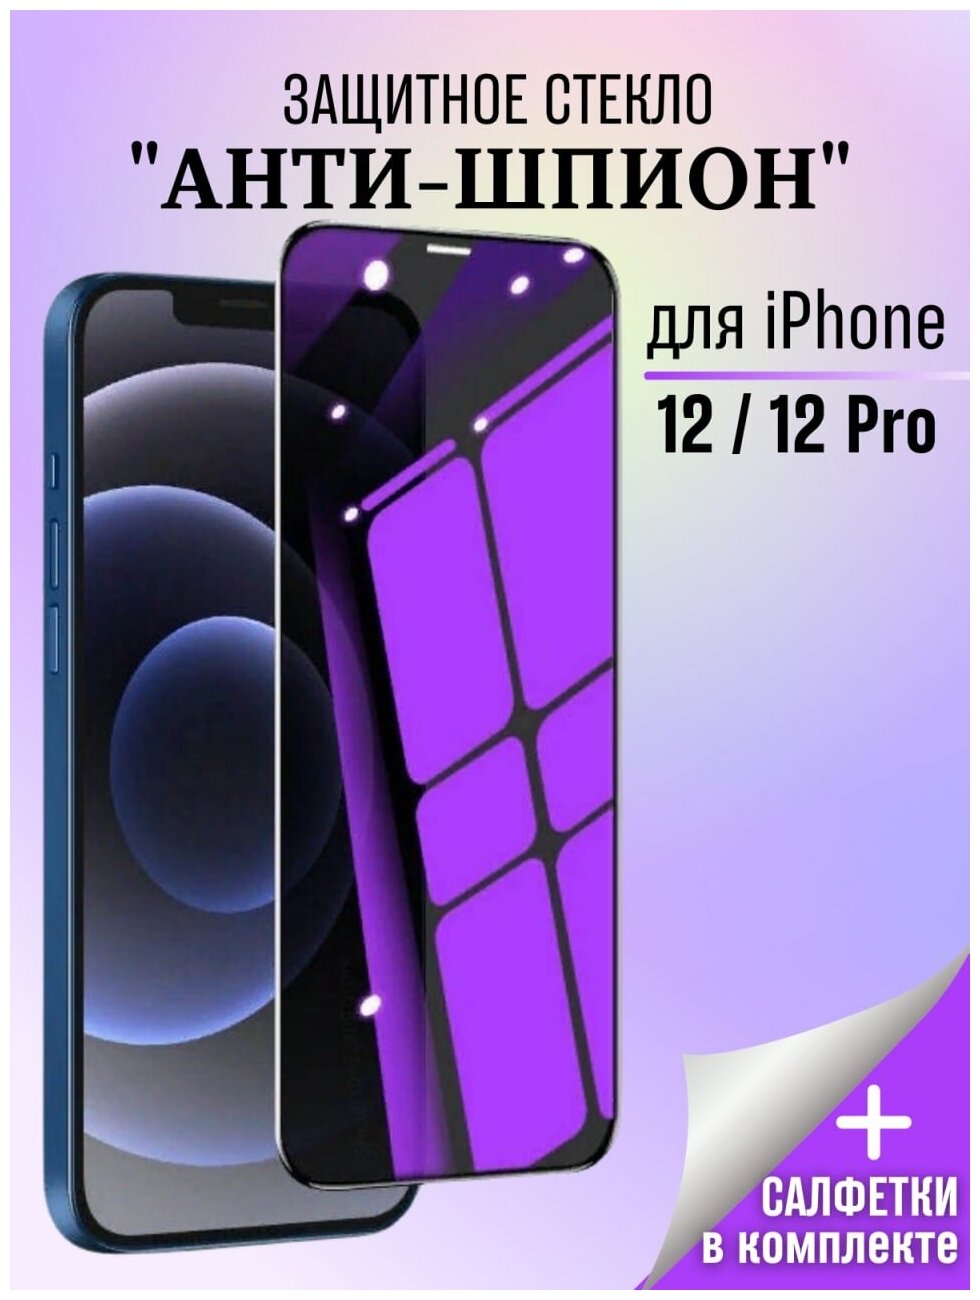 Защитное стекло Антишпион для iPhone 12 /12 PRO / Стекло Антишпион / Стекло для iPhone 12 / 12 PRO